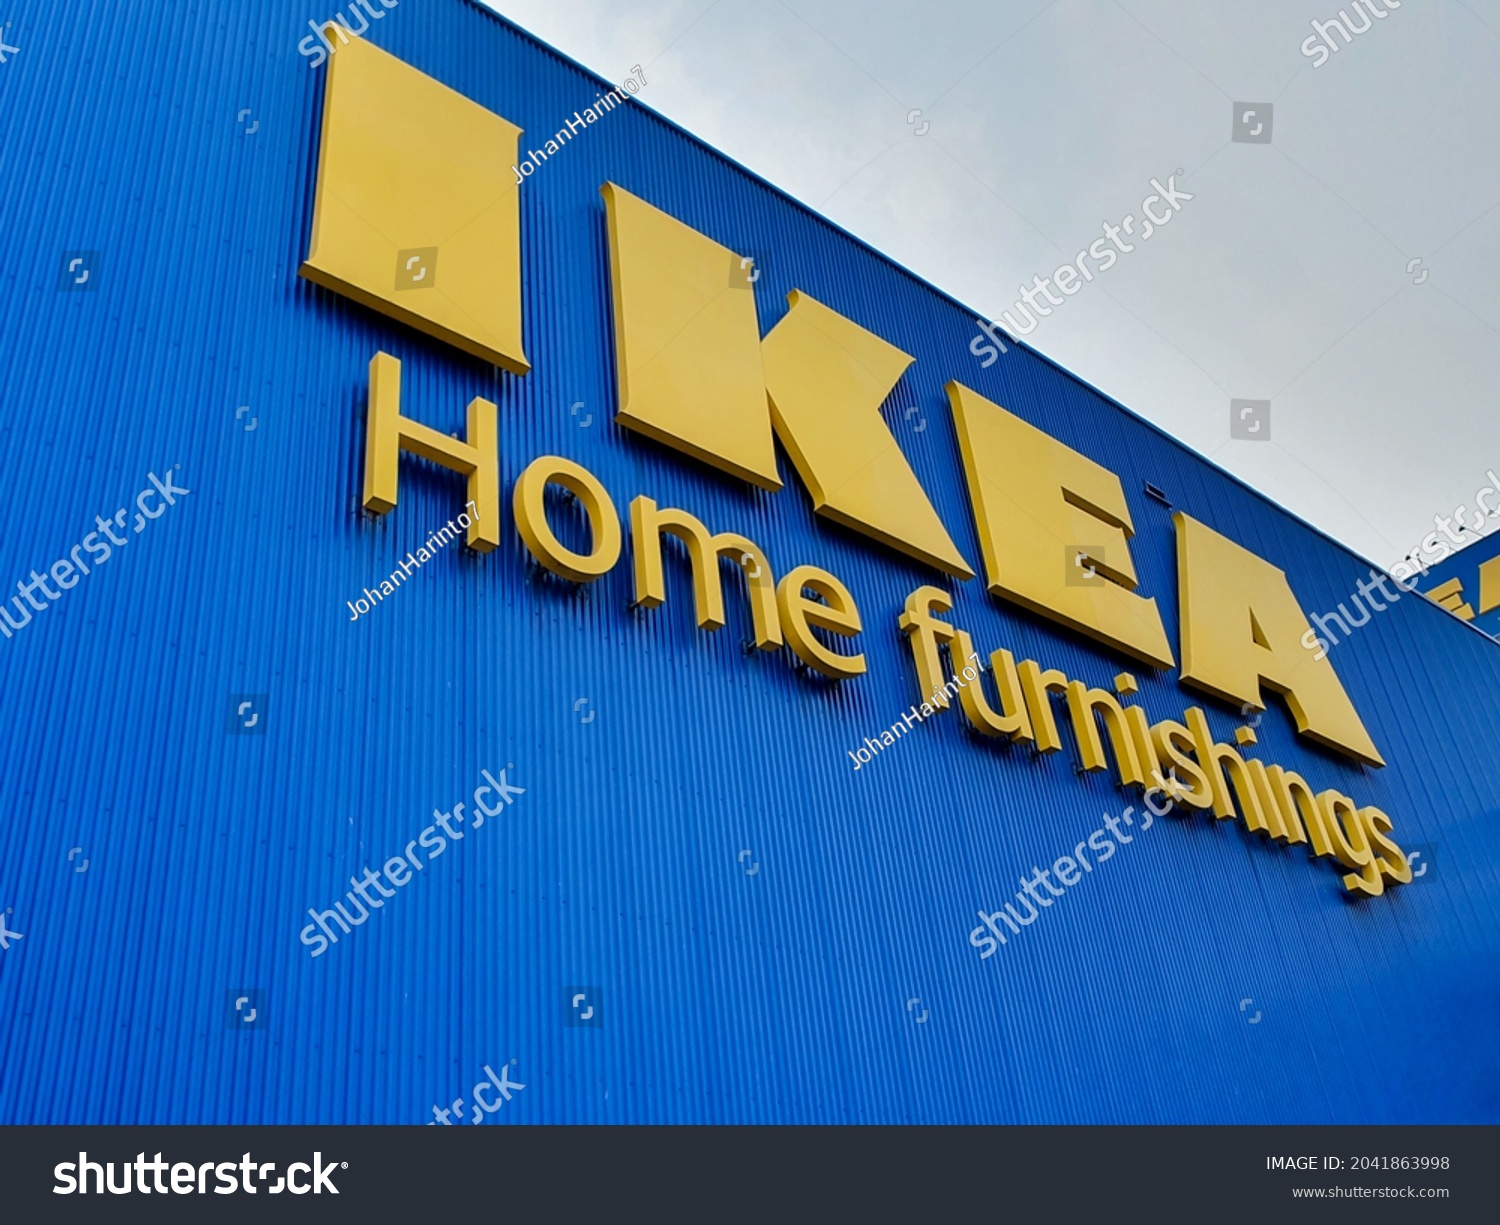 Ikea jakarta